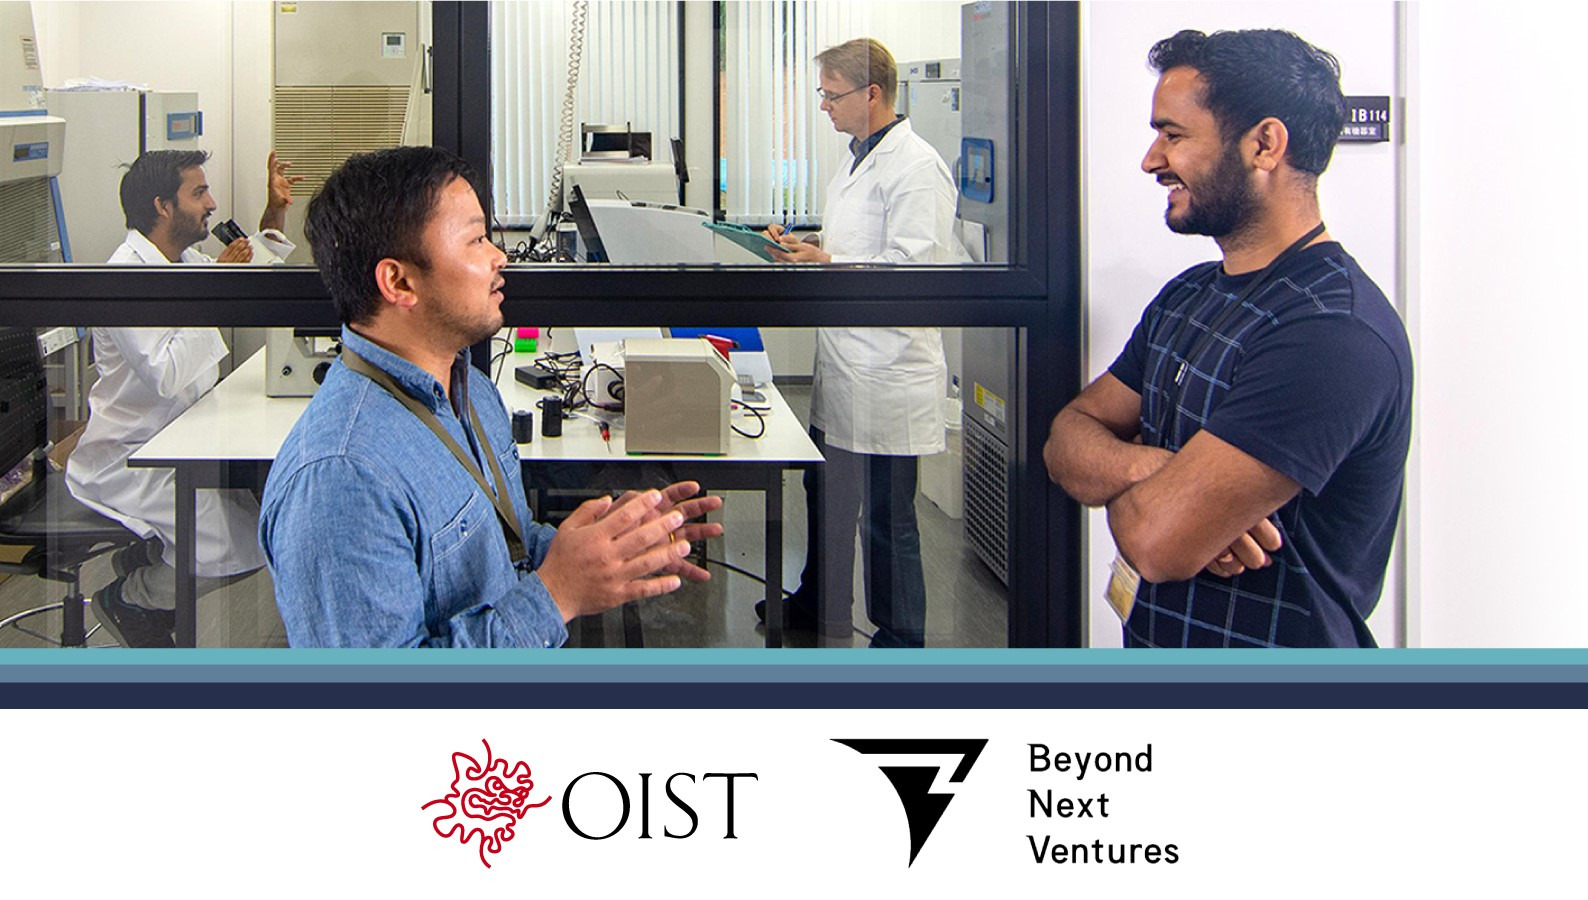 OISTとBeyond Next Venturesが連携し、沖縄を起点にディープテックスタートアップへの支援を強化